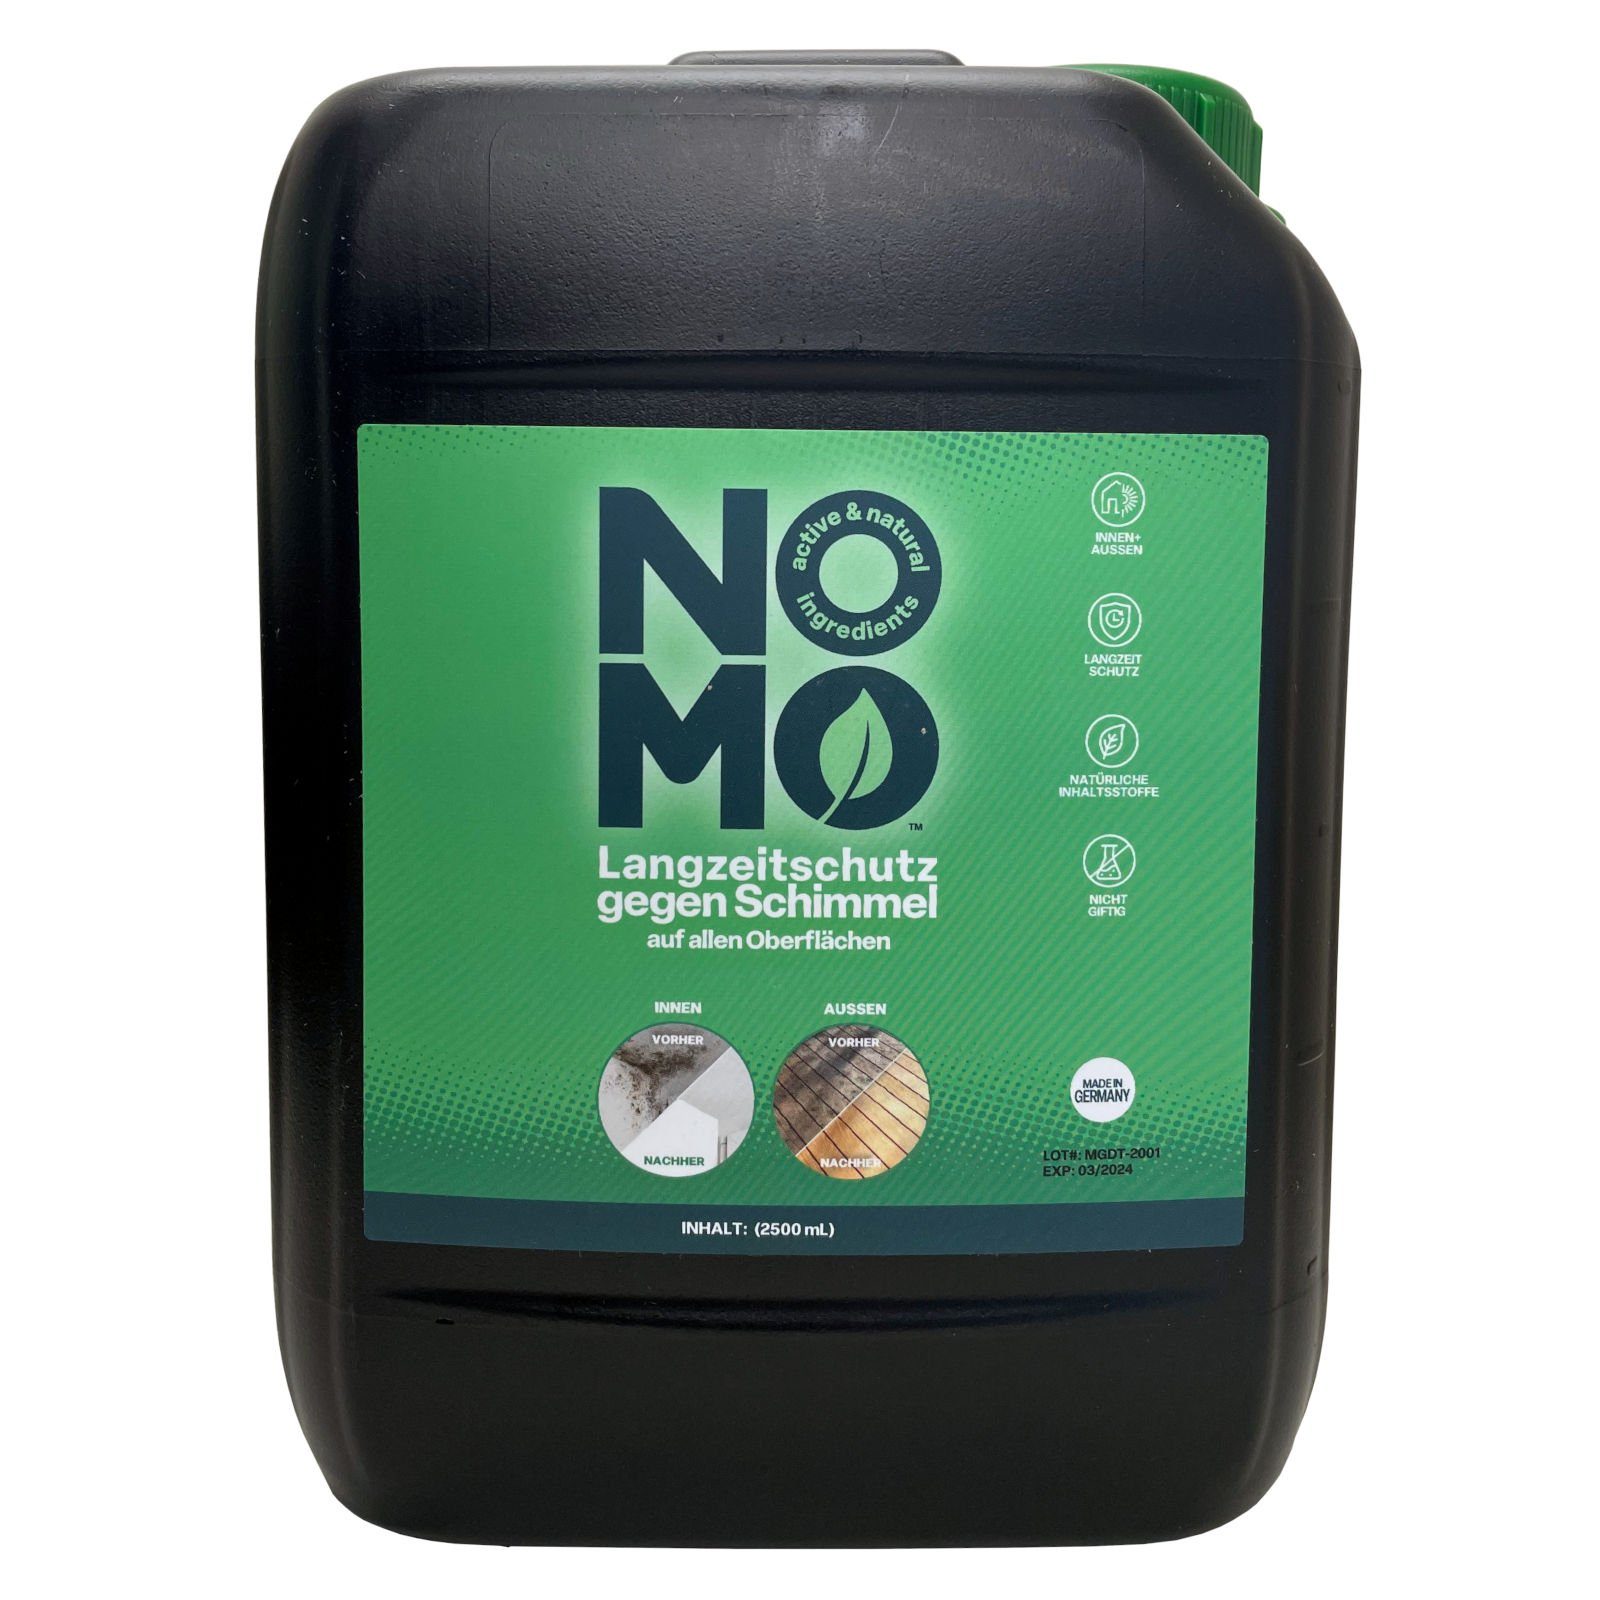 NOMO Natürlicher Langzeitschutz gegen Schimmel – 2,5 Liter Schimmelentferner